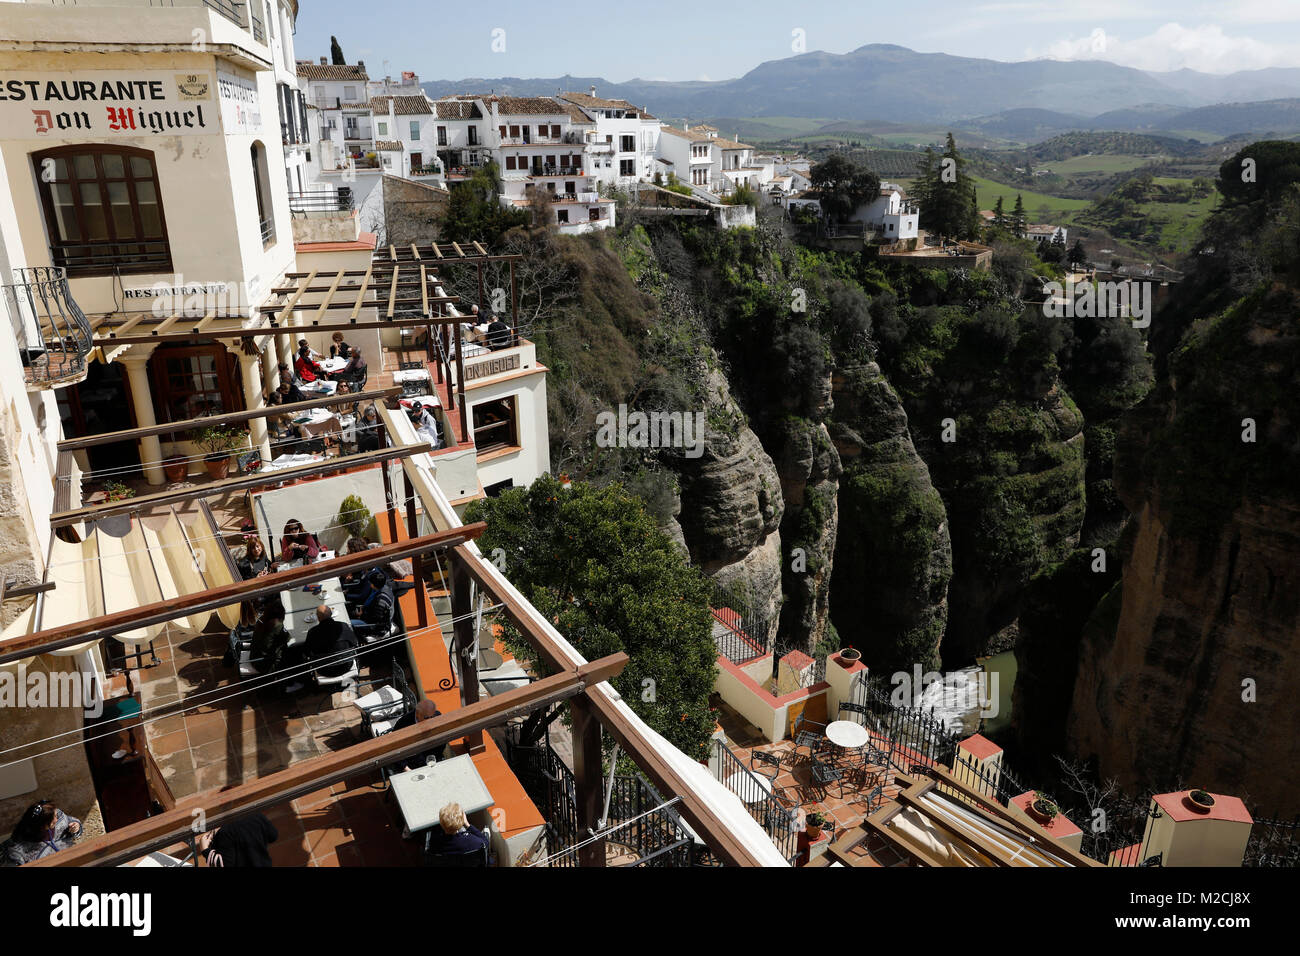 Die Stadt Ronda, in der spanischen Provinz Malaga, sitzt auf Berge umgeben von tiefen Schluchten Besucher mit Blick auf die dramatische Doppelzi. Stockfoto